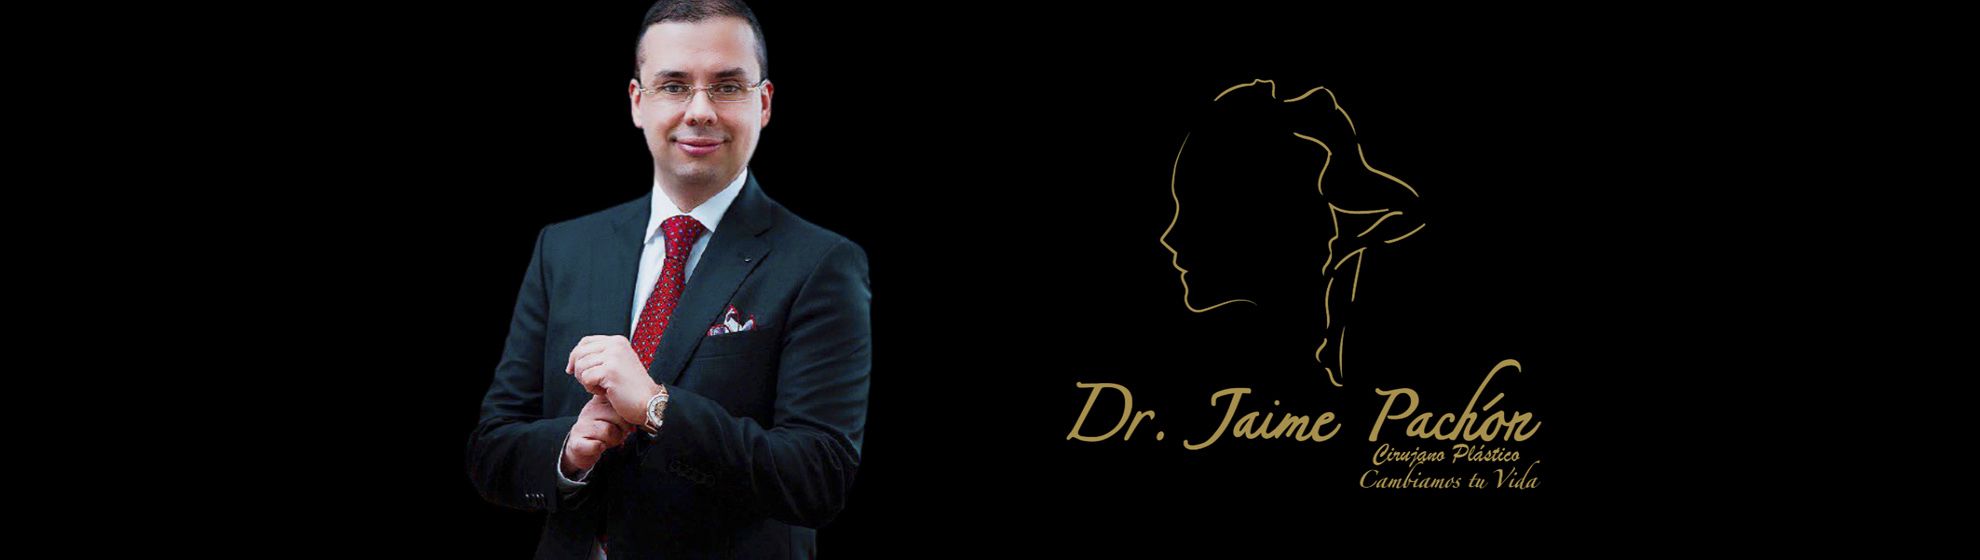 Dr. Jaime Pachón